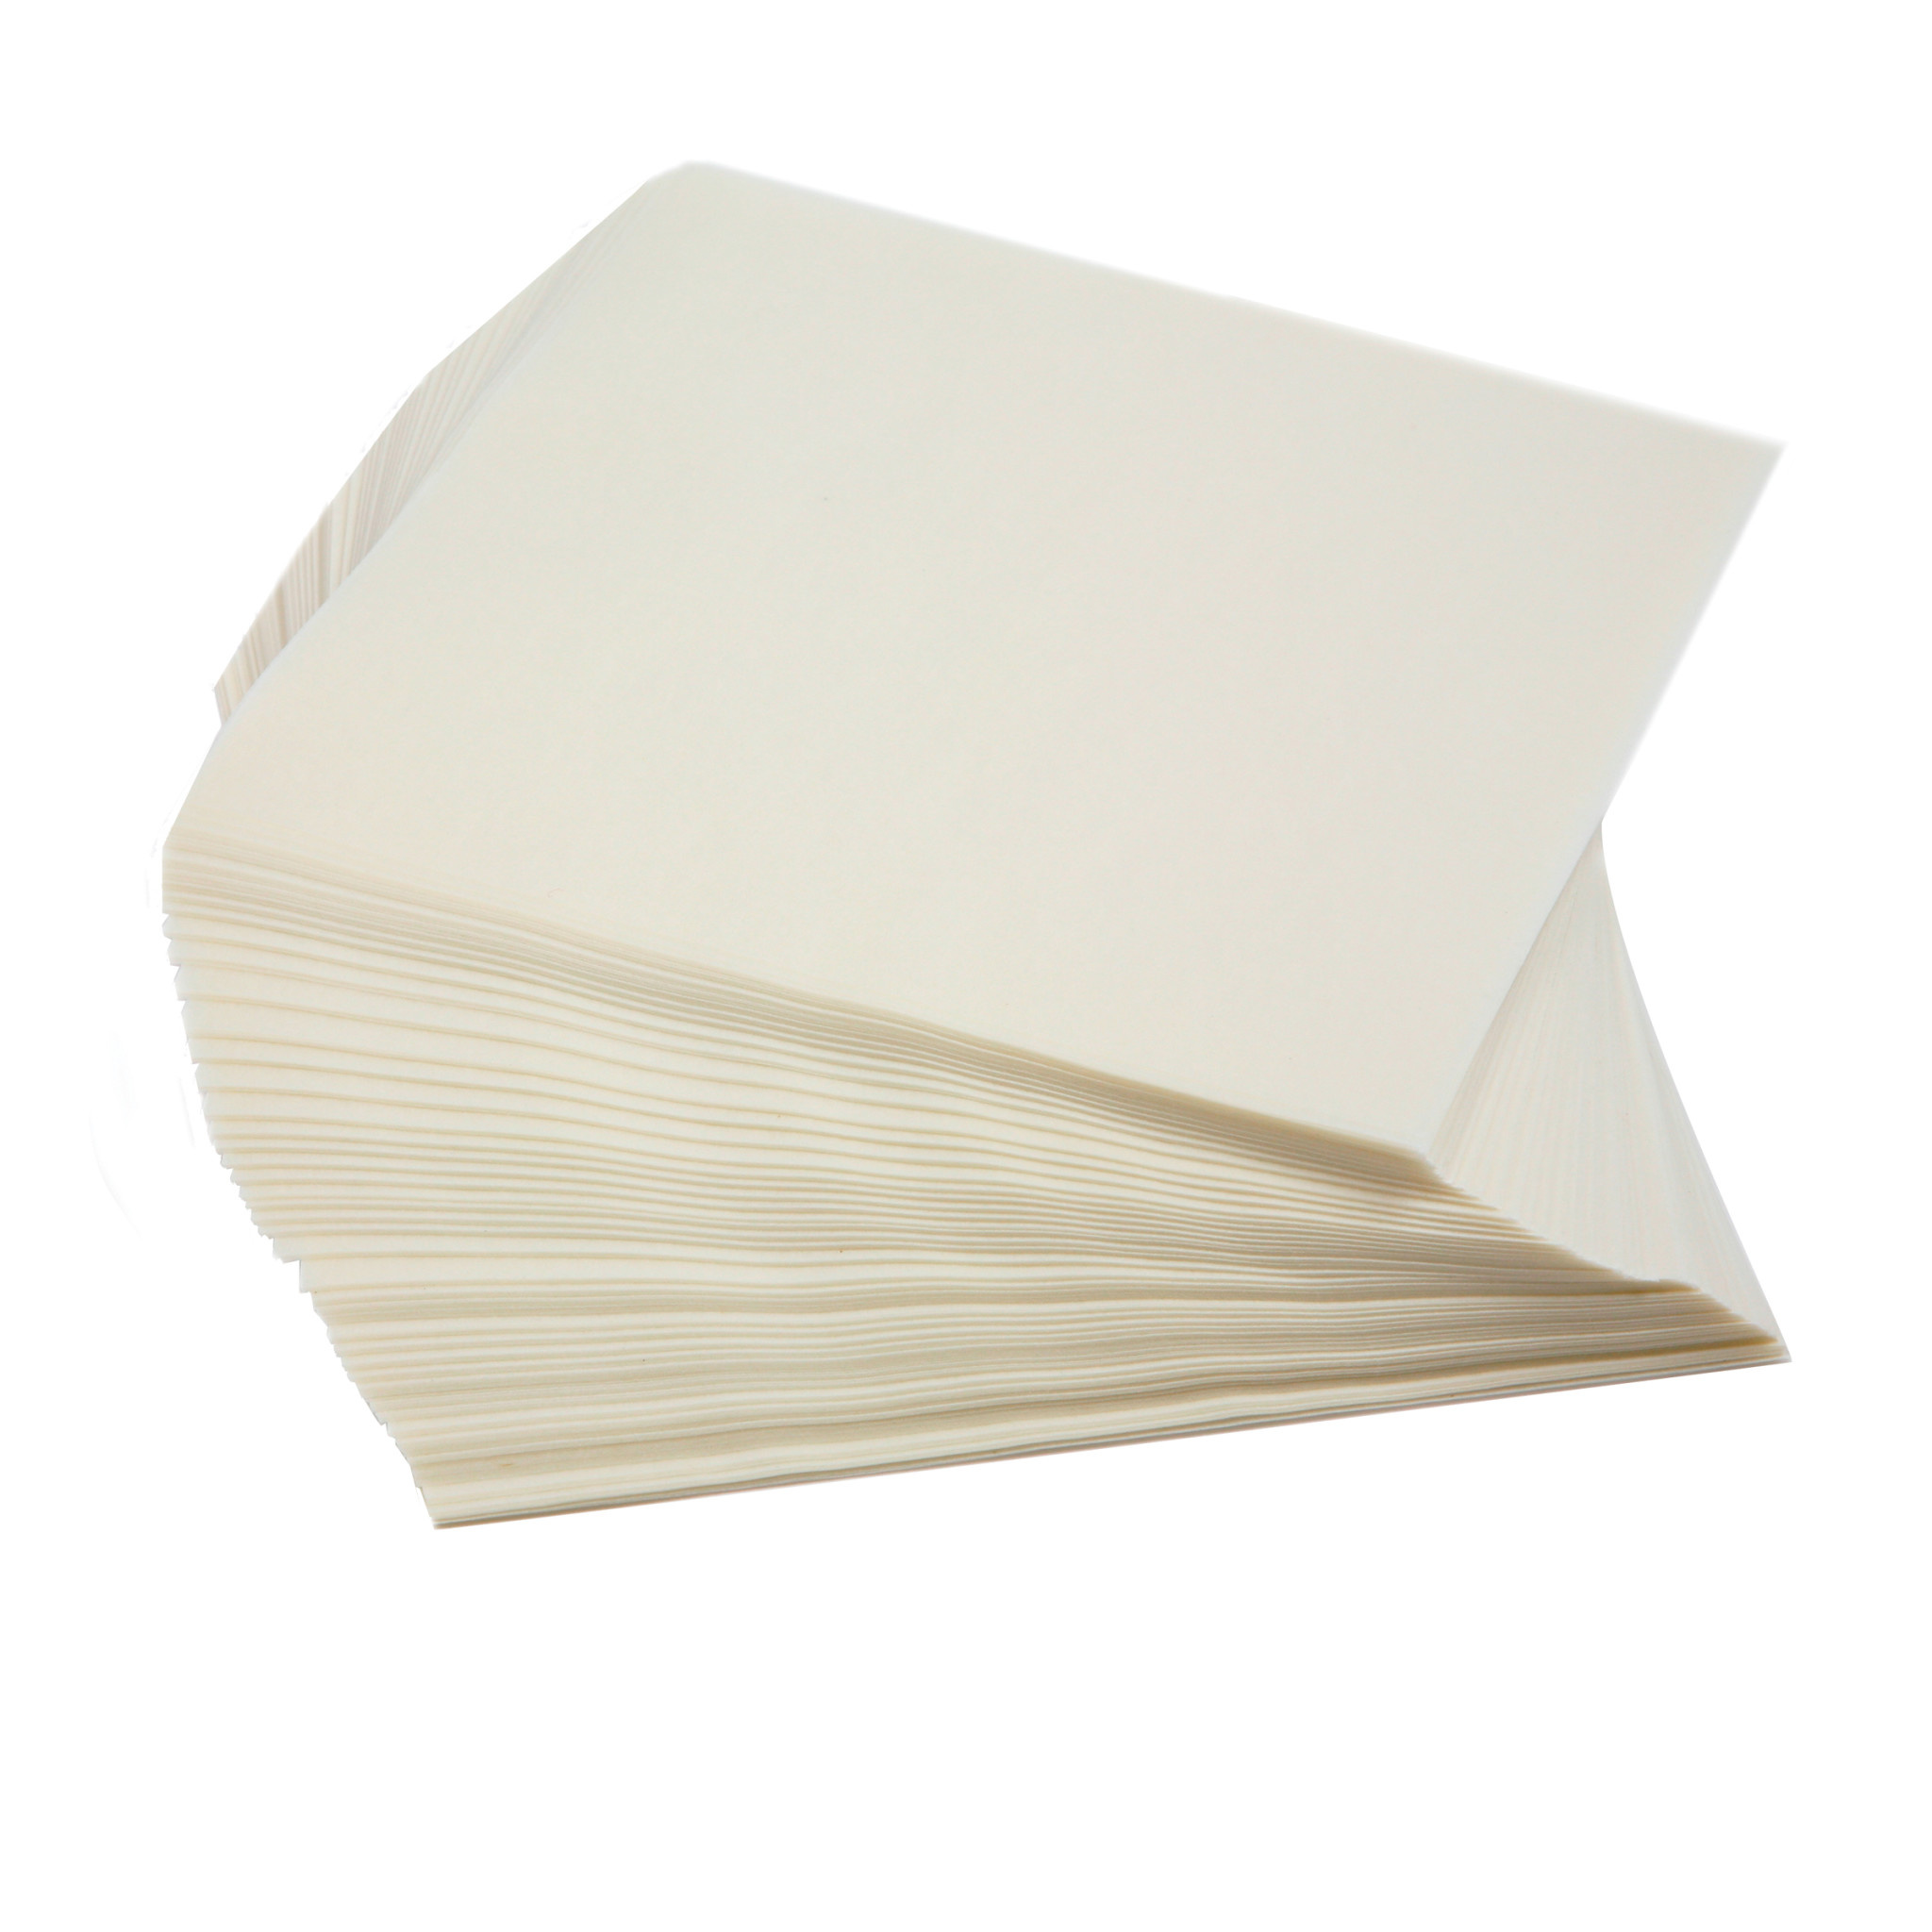 Пищевая бумага купить. Рисовая бумага квадратная. Пищевая бумага. Лист рисовой бумаги. Рисовая бумага тонкая.